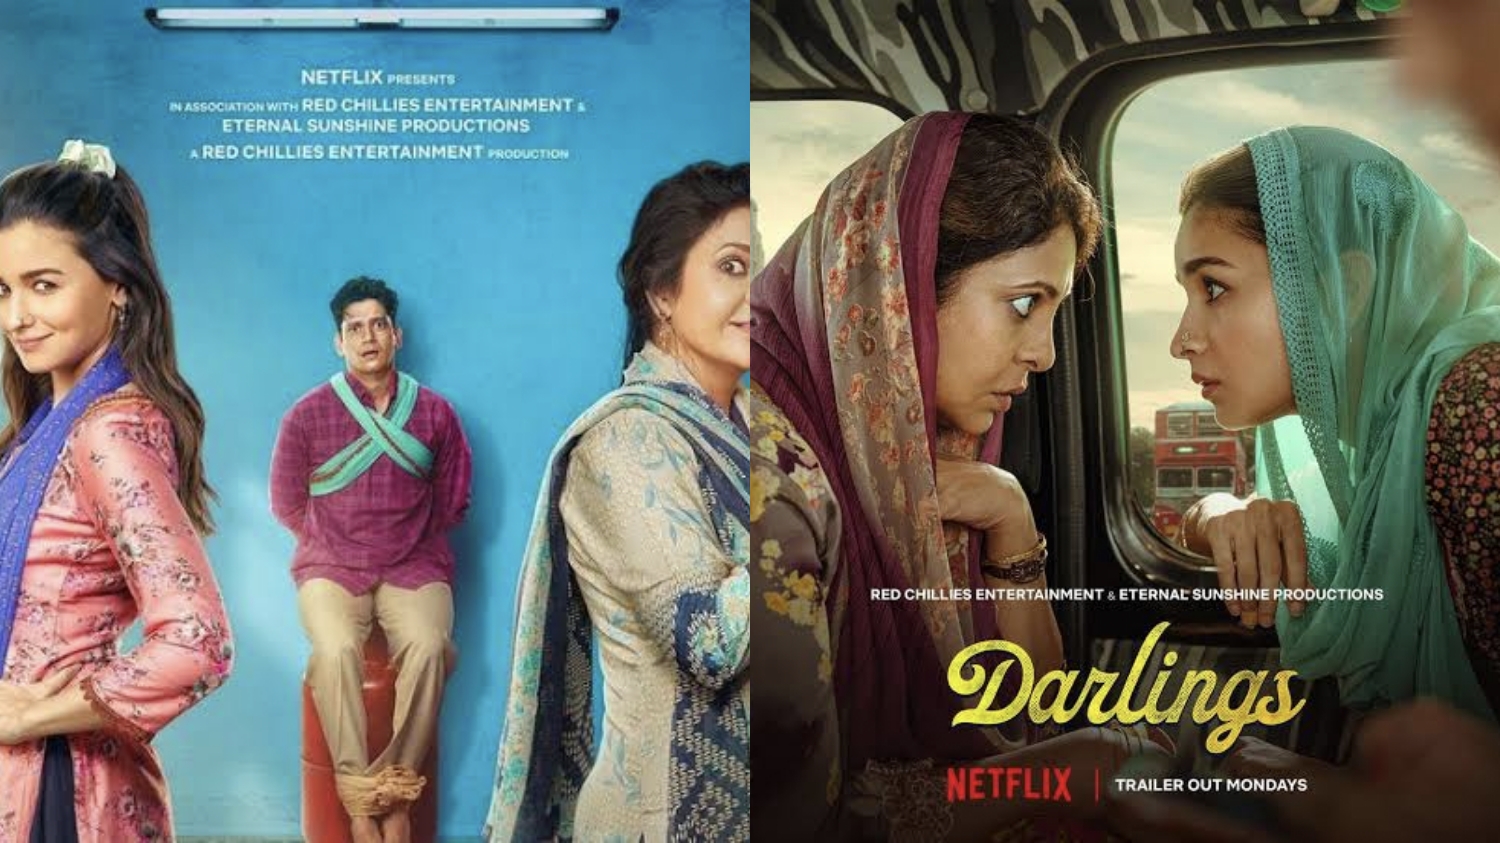 Trending di Netflix! Berikut Sinopsis Film Darlings Dendam Istri ke Suami Pemabuk